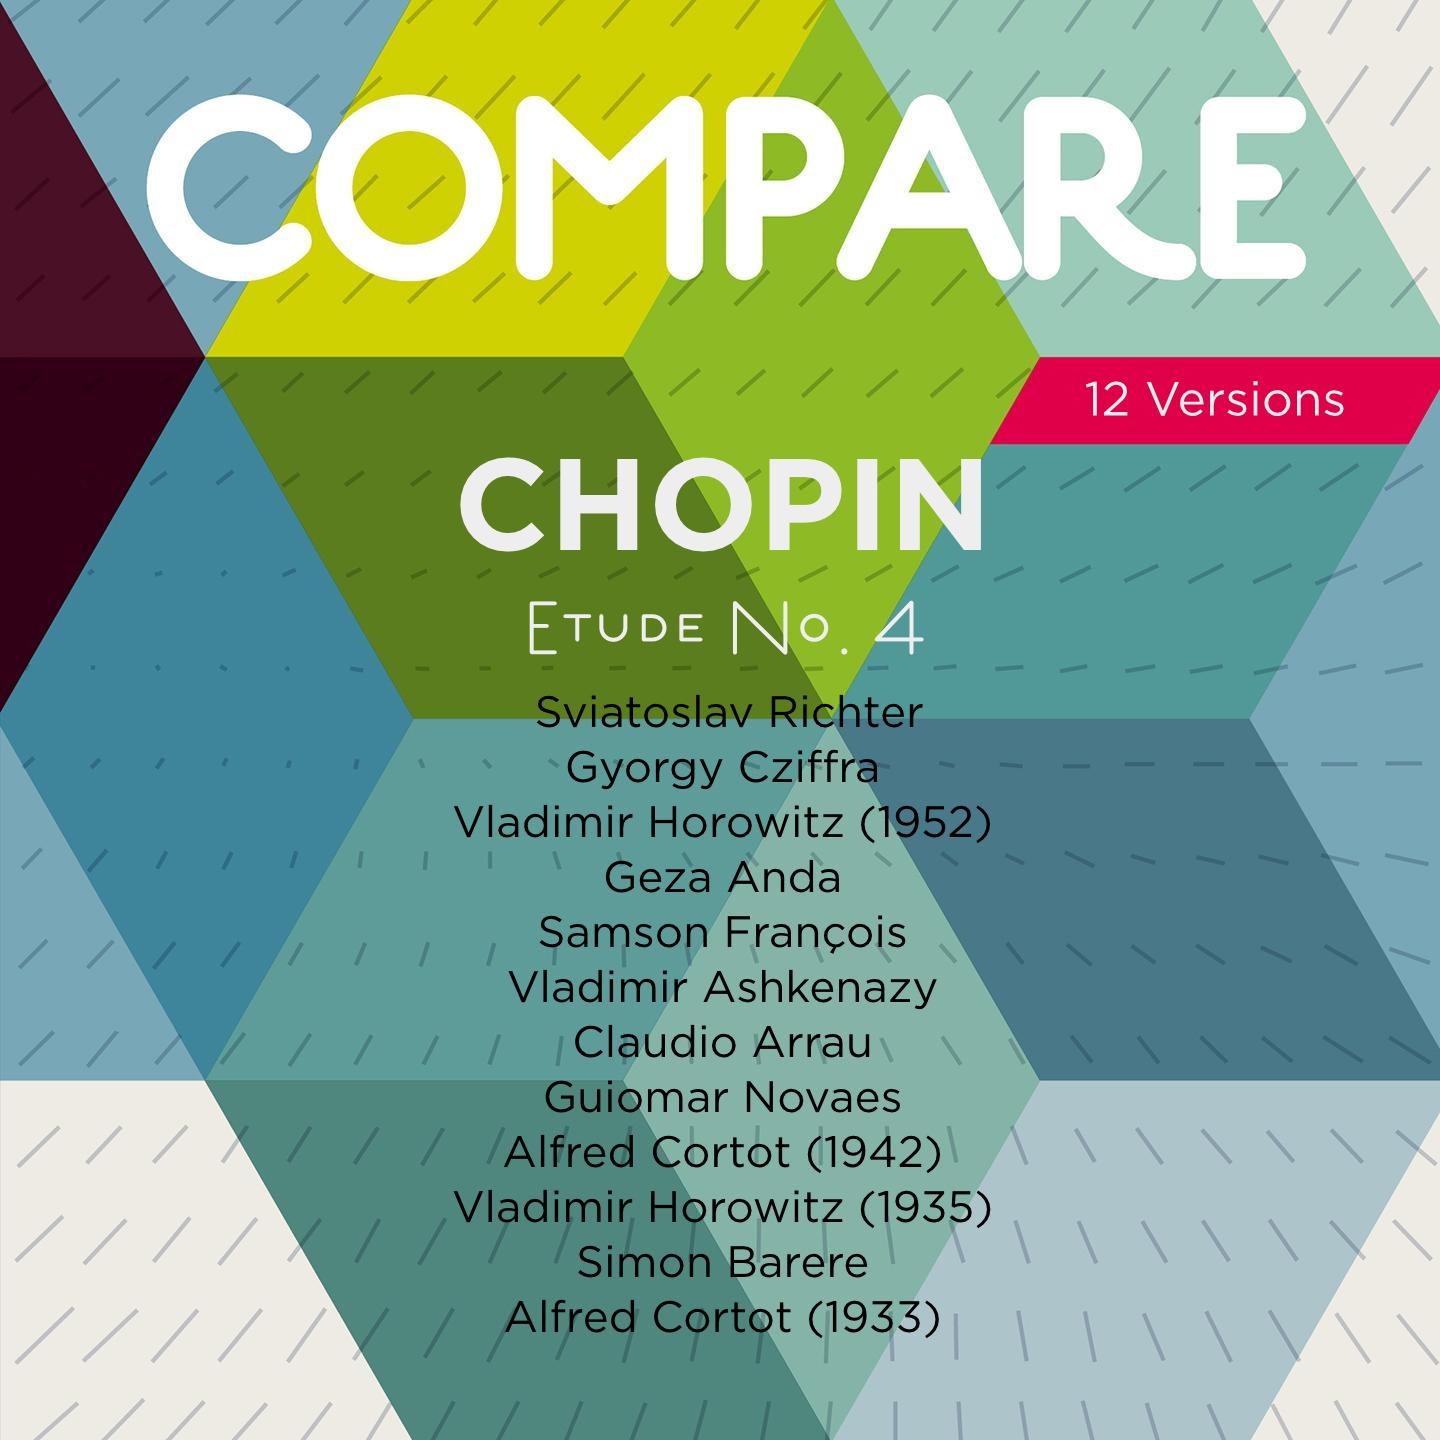 Chopin: Etudes, Op. 10 No. 4, Richter vs. Cziffra vs. Horowitz vs. Anda vs. François vs. Ashkenazy vs. Arrau vs. Novaes vs. Cortot vs. Horowitz vs. Barere vs. Cortot